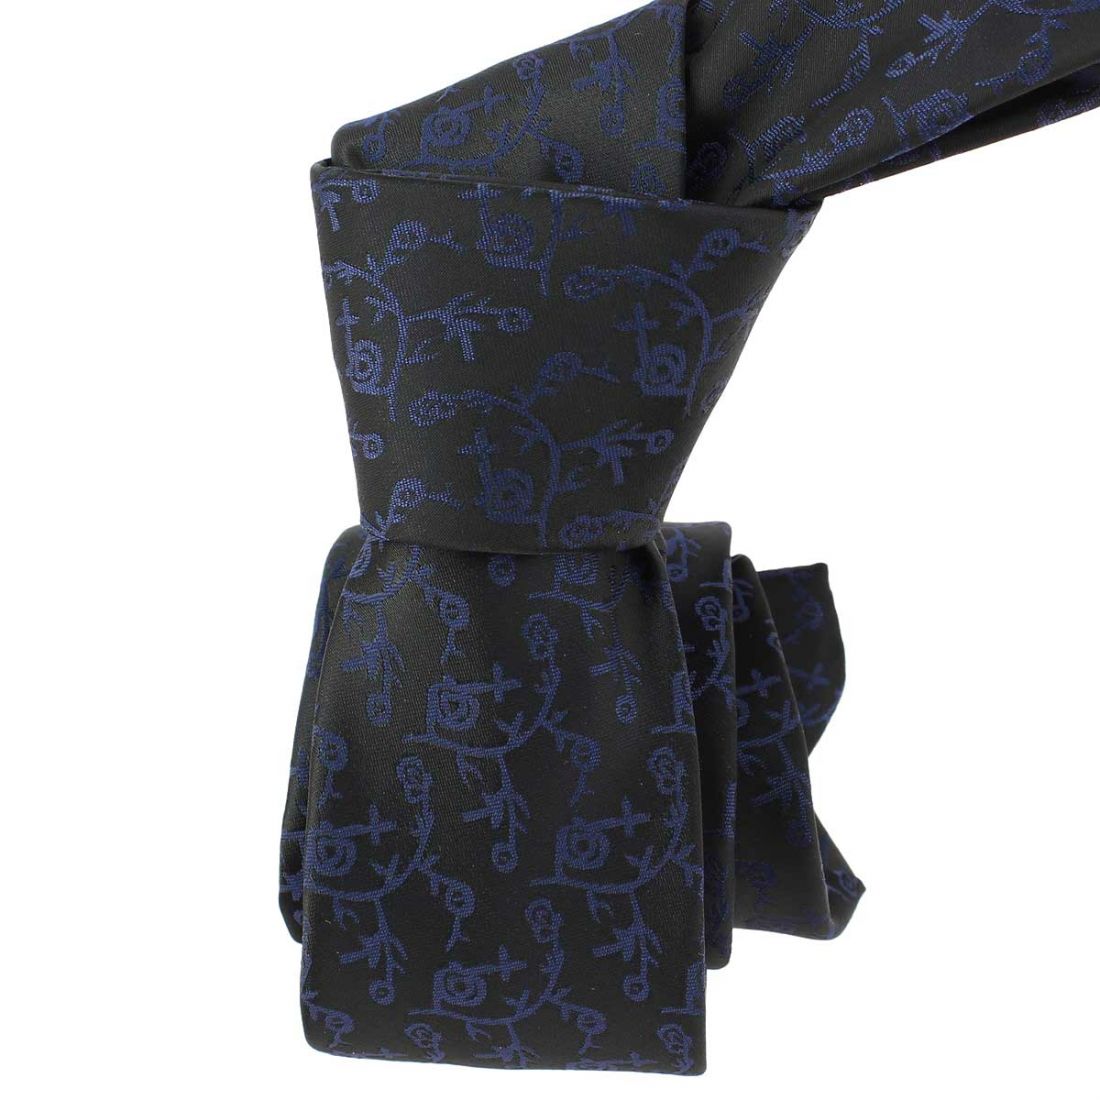 London slim tie-black - | eBay